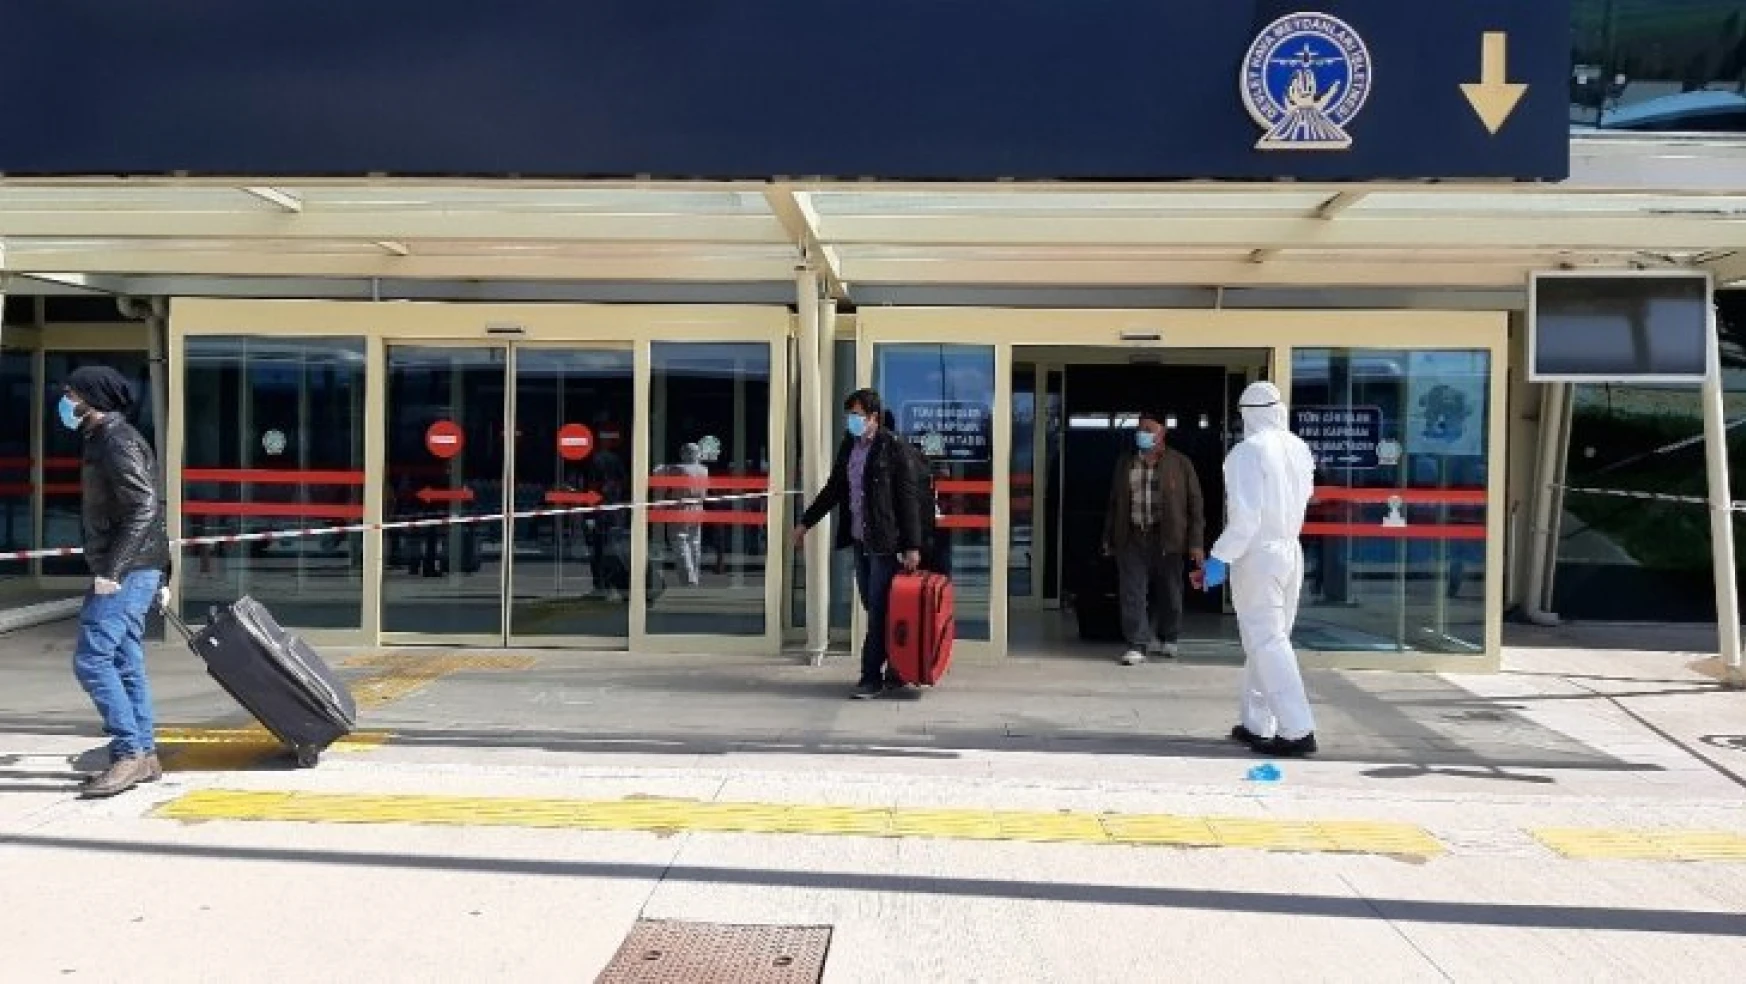 Karadağ'dan 3 uçakla gelen 492 kişi 14 günlük karantinaya alındı